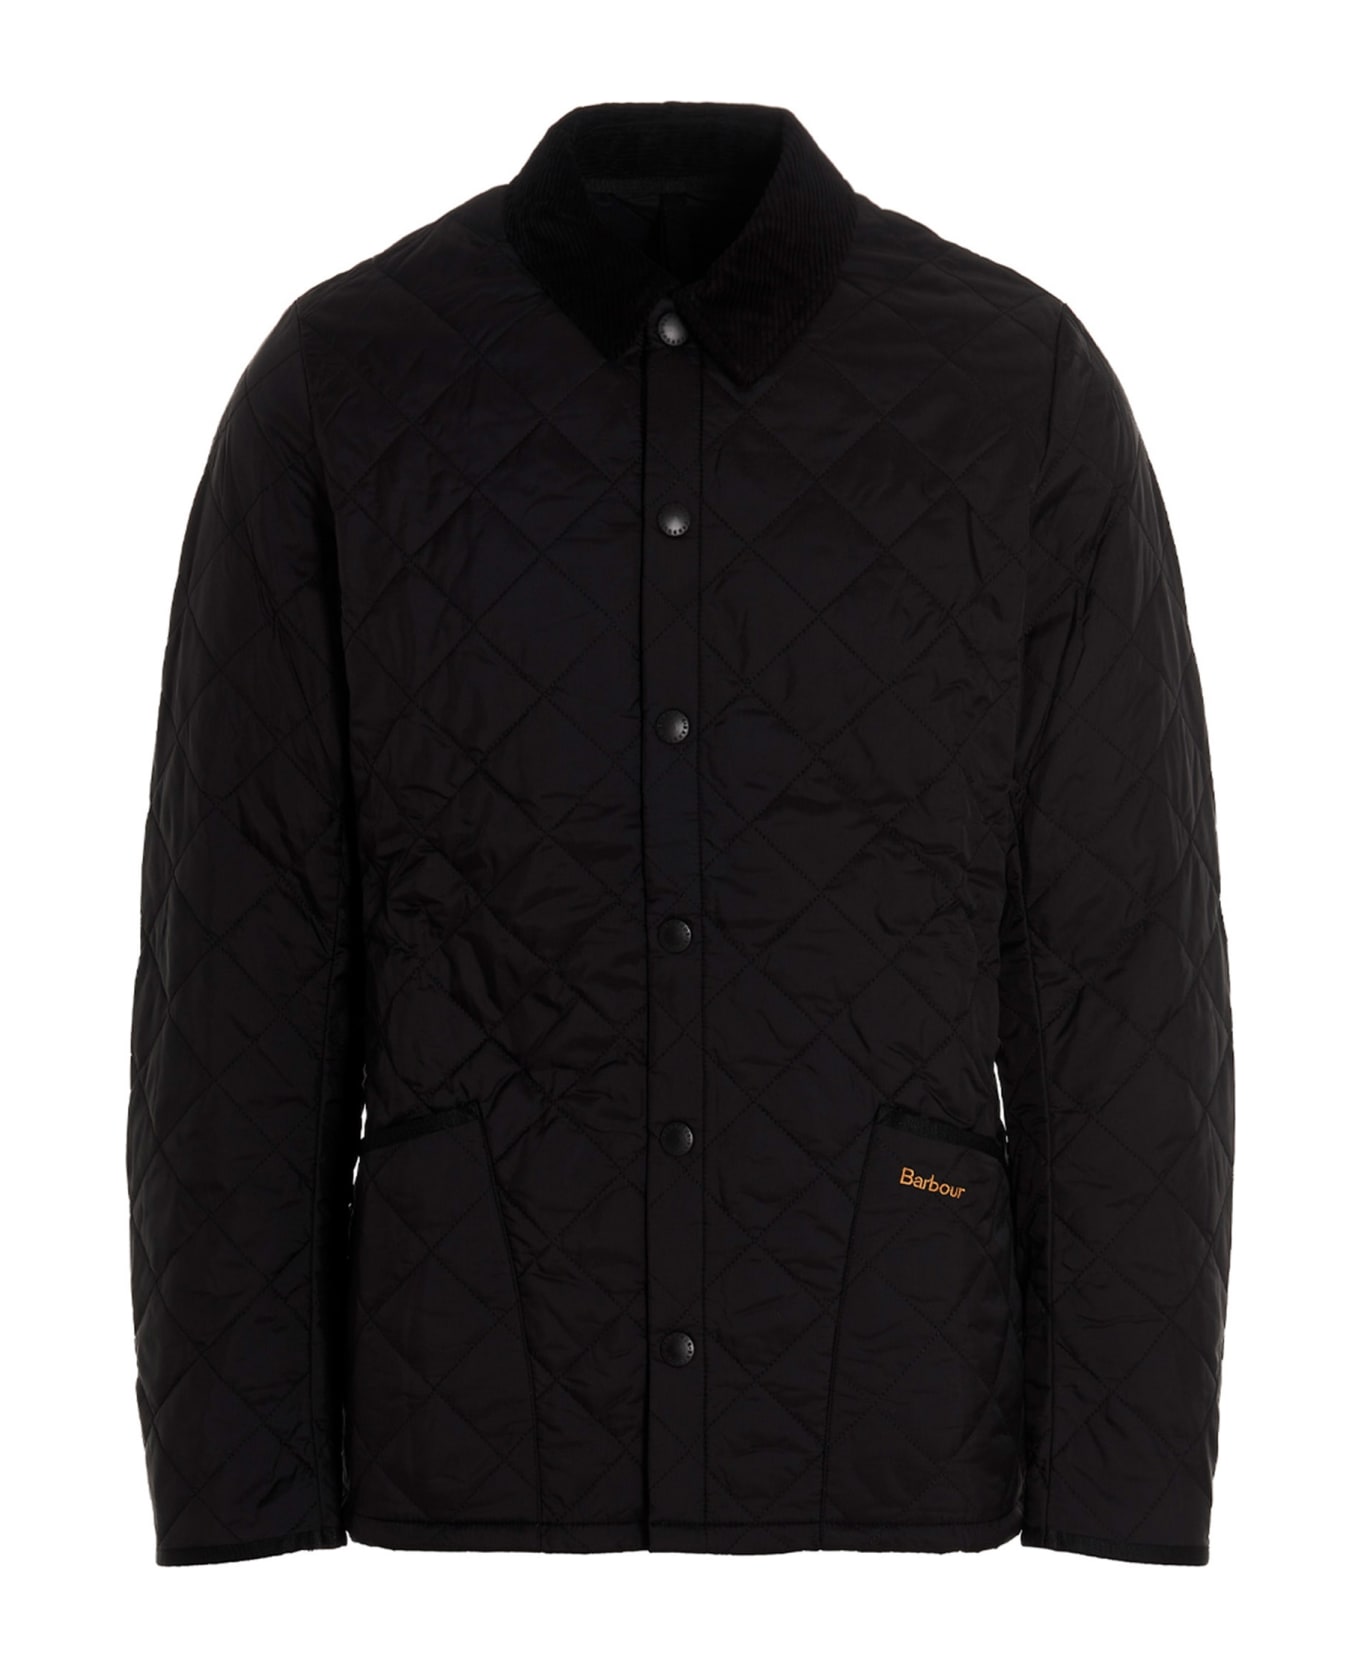 Barbour 'heritage Liddesdale' Jacket - Black   ジャケット